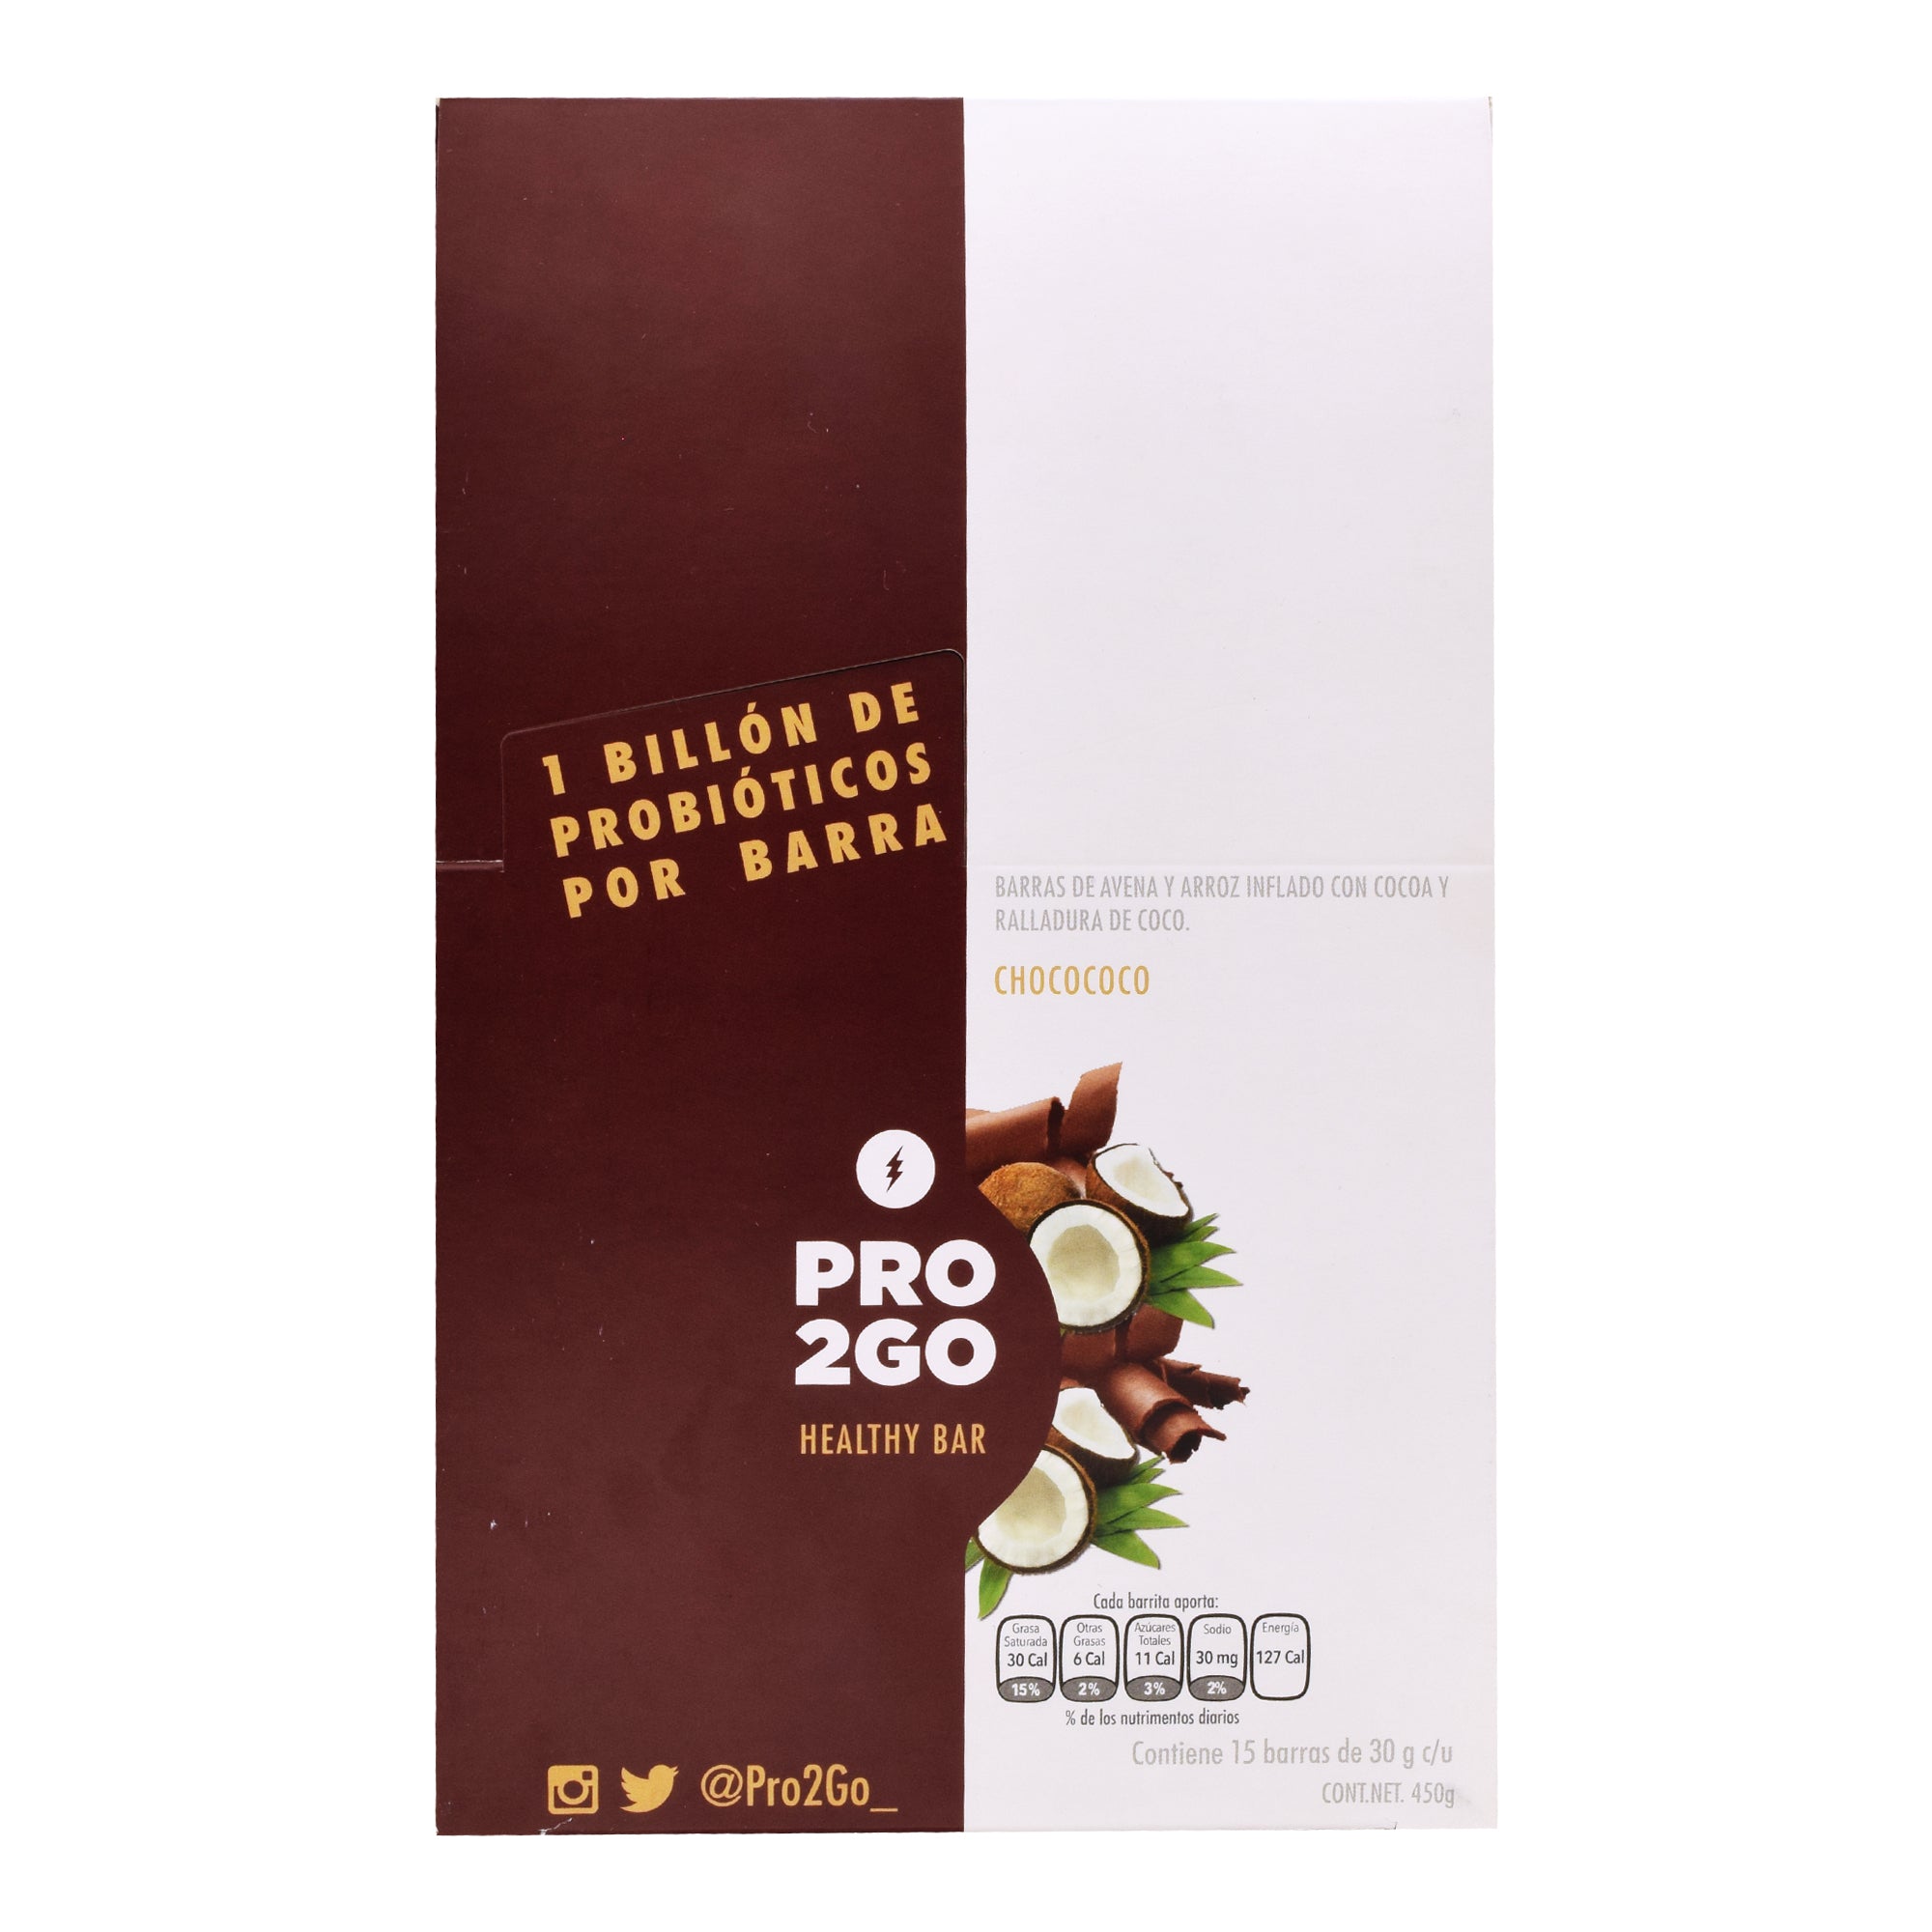 Barra de avena chocolate y coco con probioticos 30 g (PAQUETE 15)